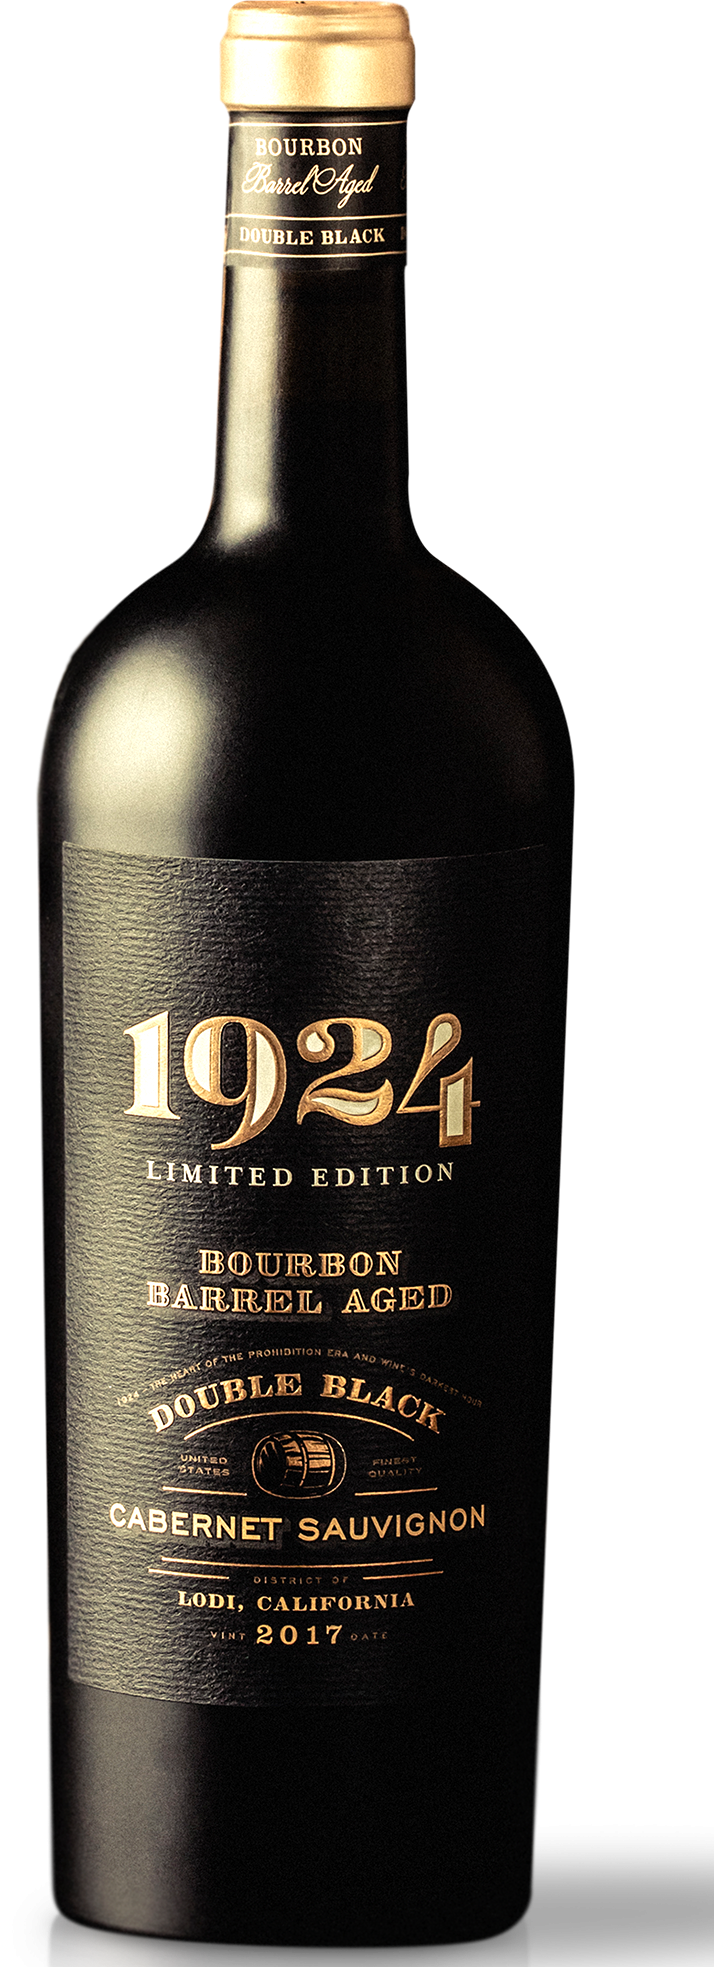 Bottle of 1924 Double Black Bourbon Barrel Aged Cabernet Sauvignon